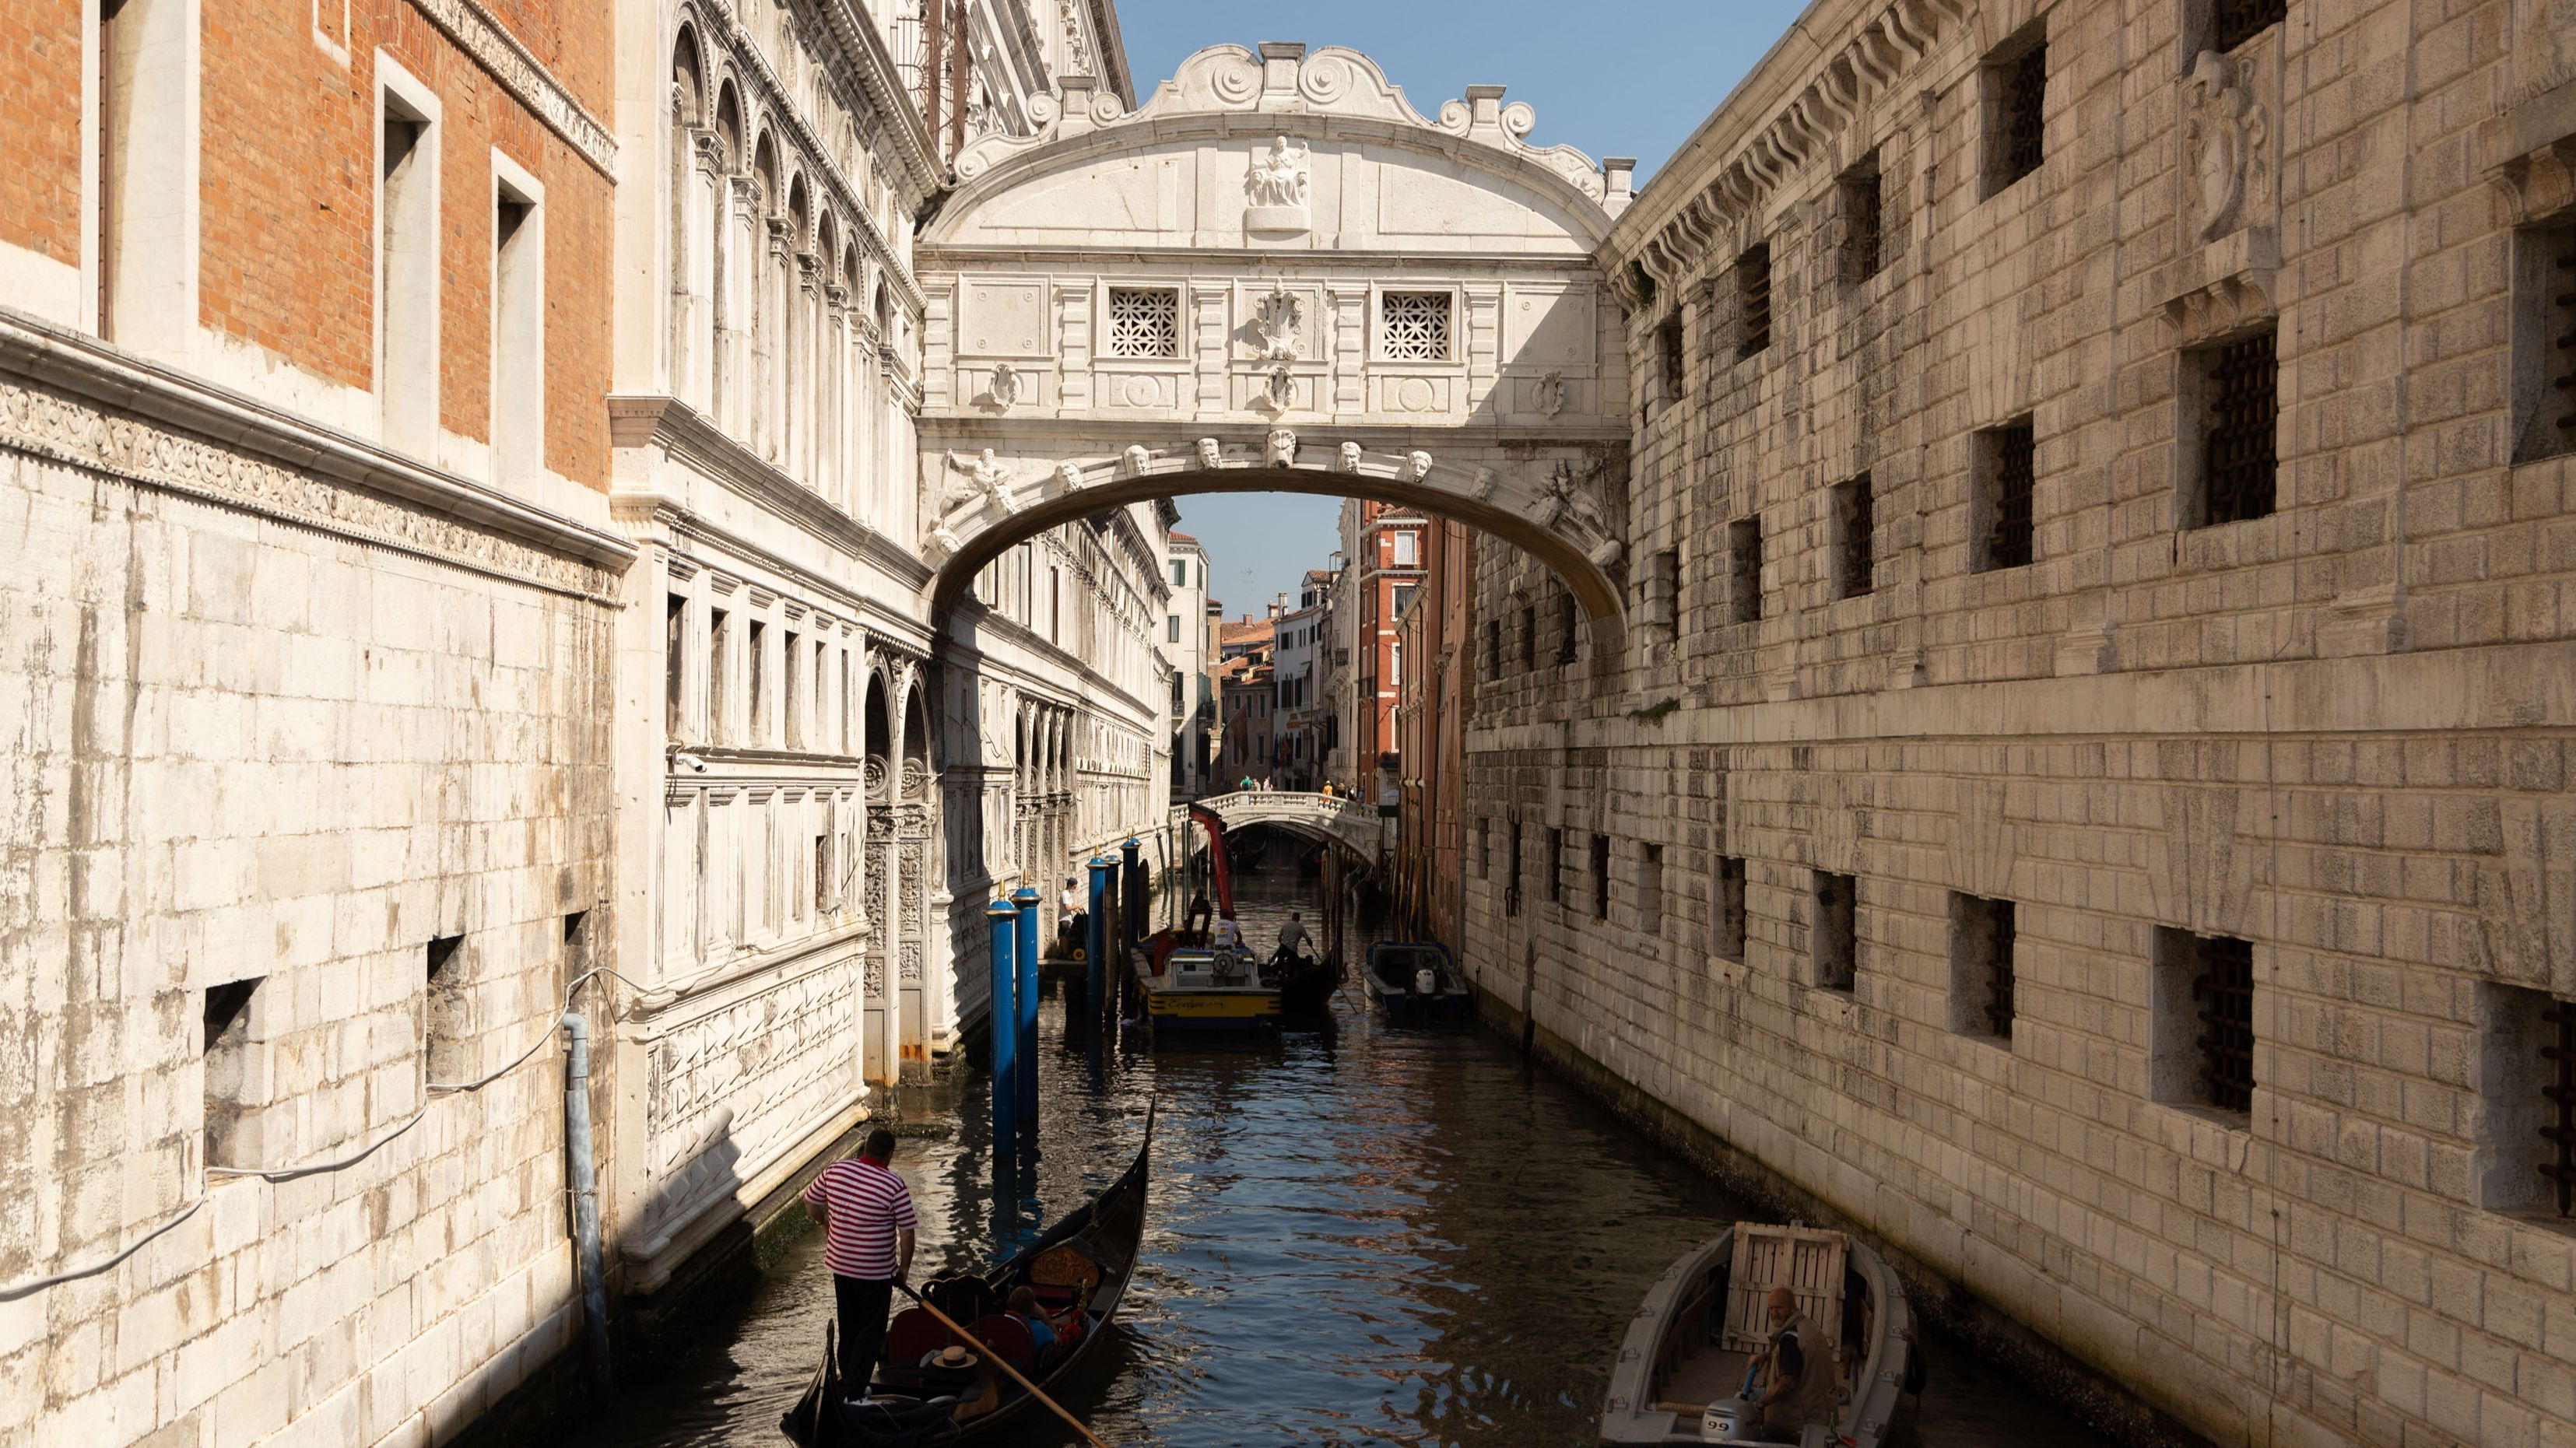 Enclaves de Venecia para descubrir 'El ángel de la ciudad' - Uppers